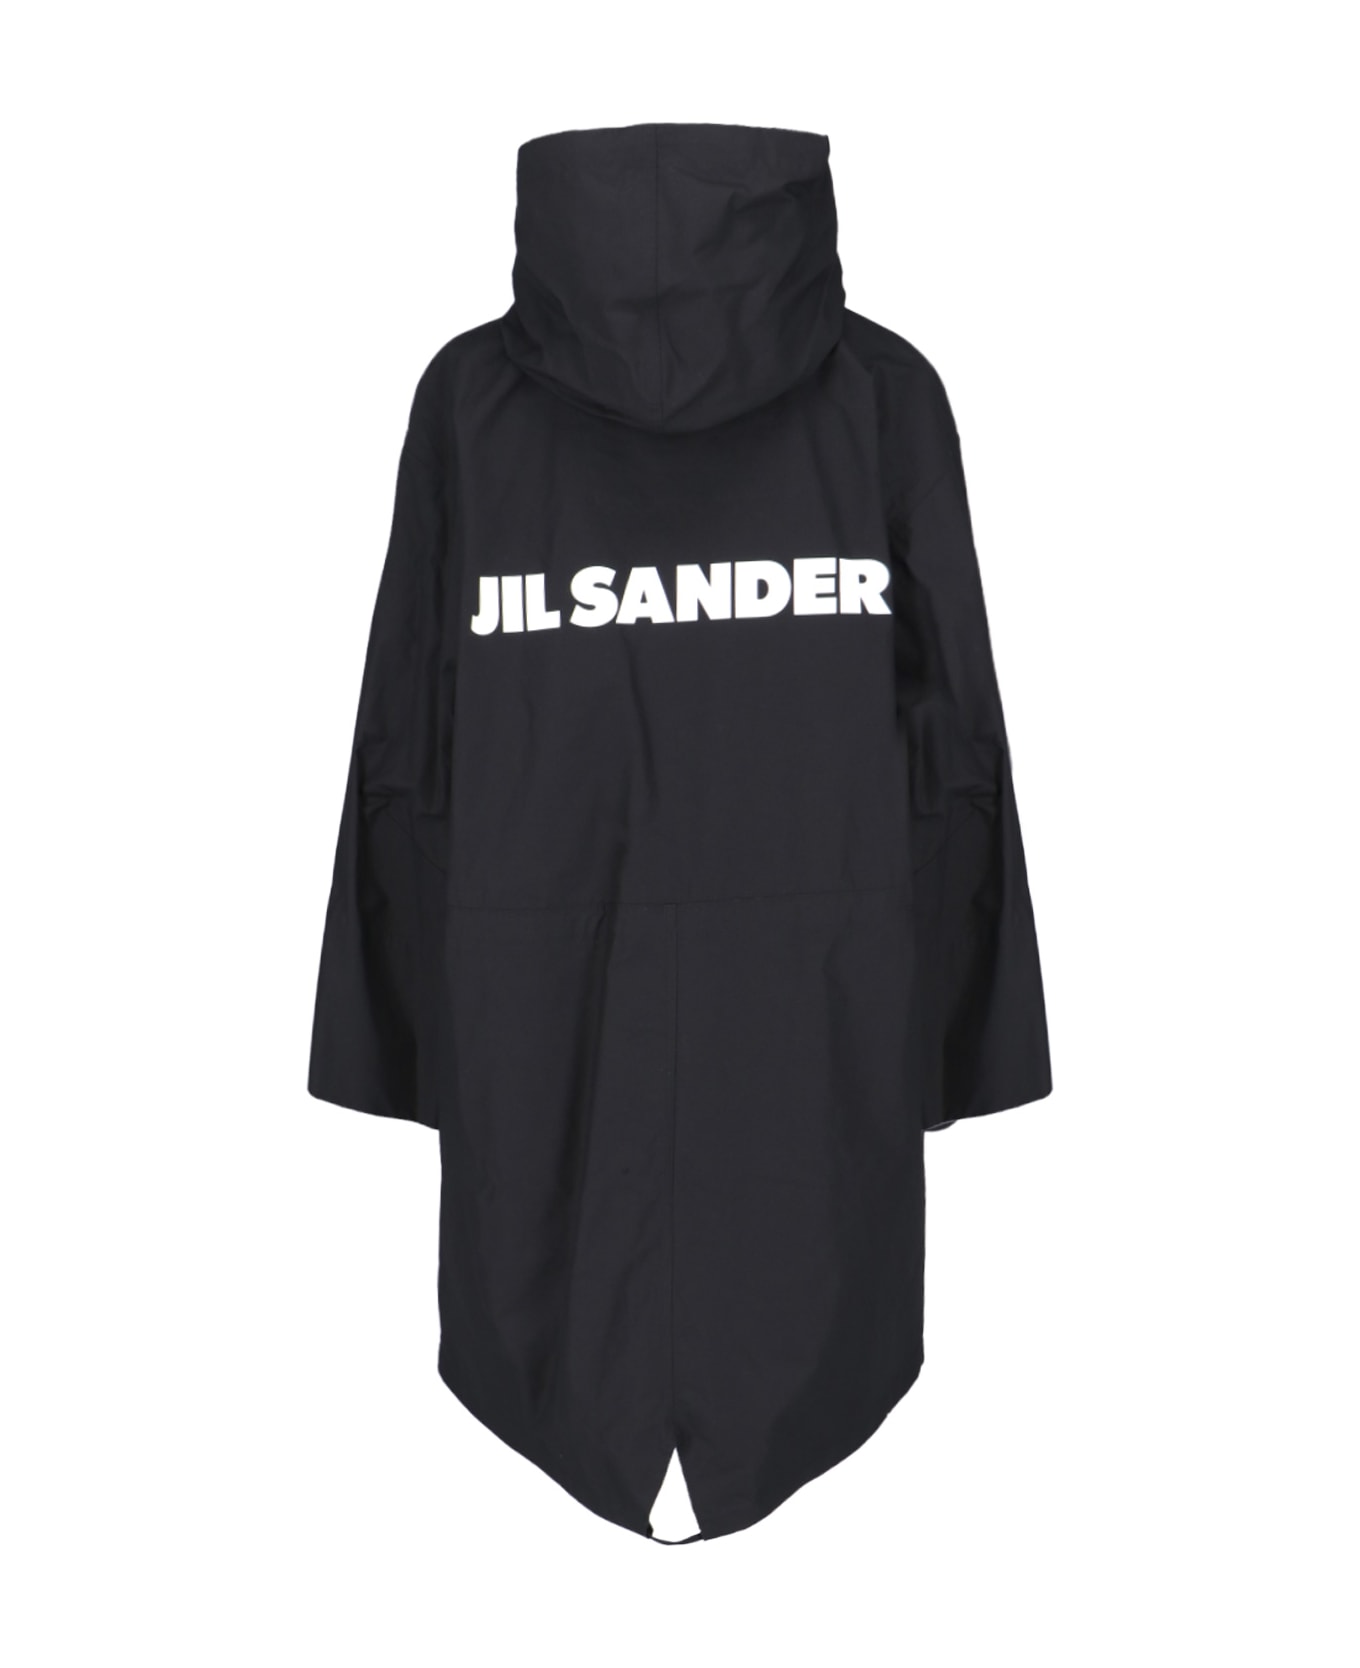 Jil Sander Logo Parka On The Back - Black   コート